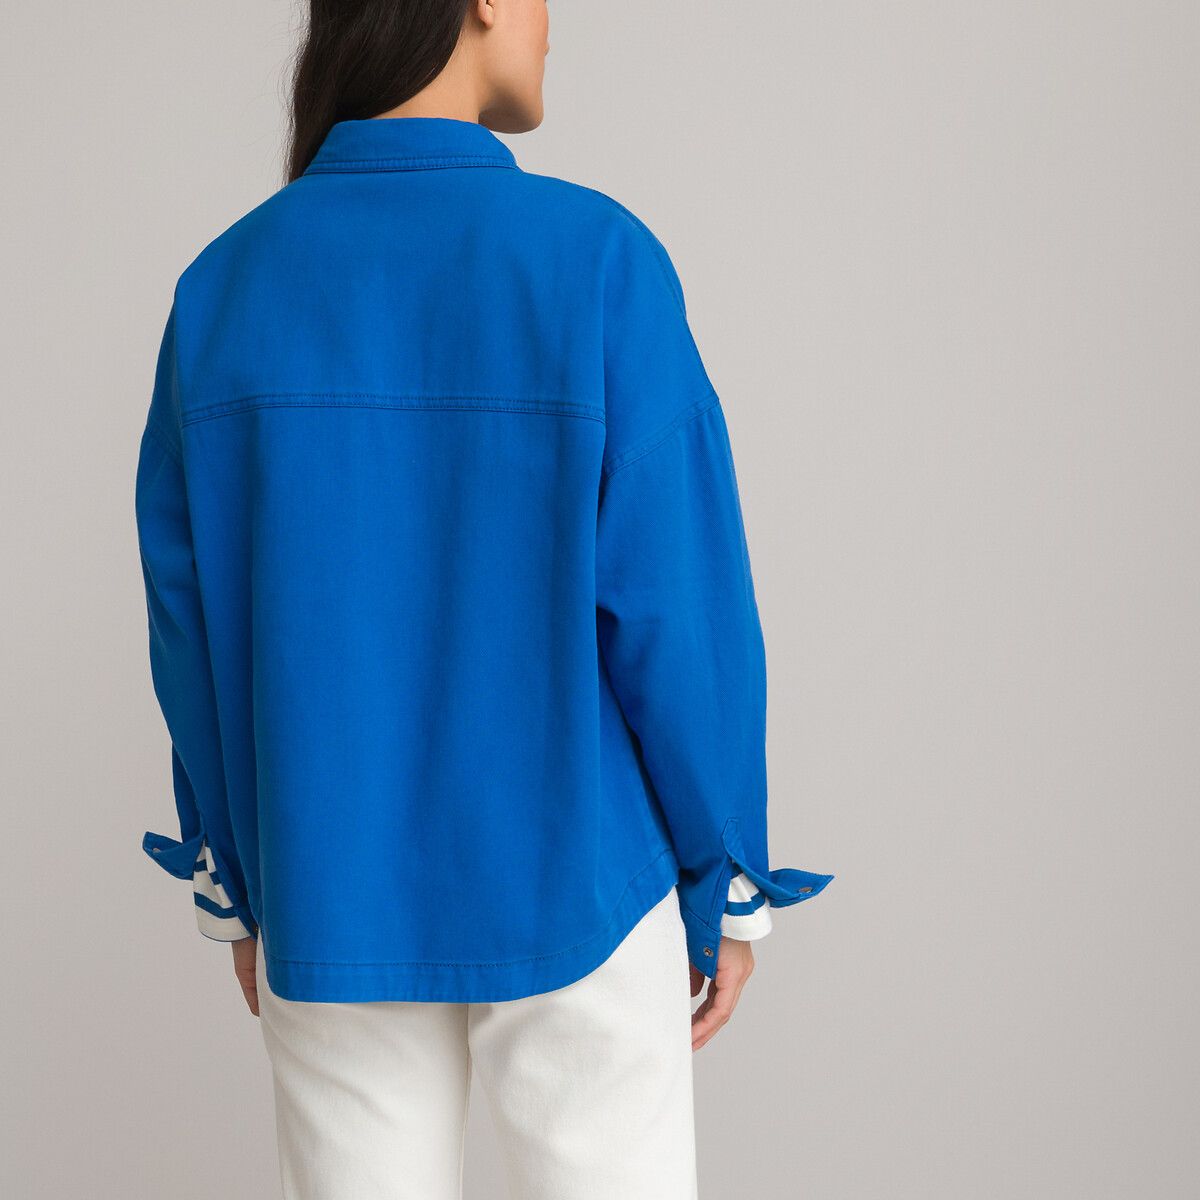 Рубашка Свободного покроя с длинными рукавами 48 (FR) - 54 (RUS) синий LaRedoute, размер 48 (FR) - 54 (RUS) Рубашка Свободного покроя с длинными рукавами 48 (FR) - 54 (RUS) синий - фото 4